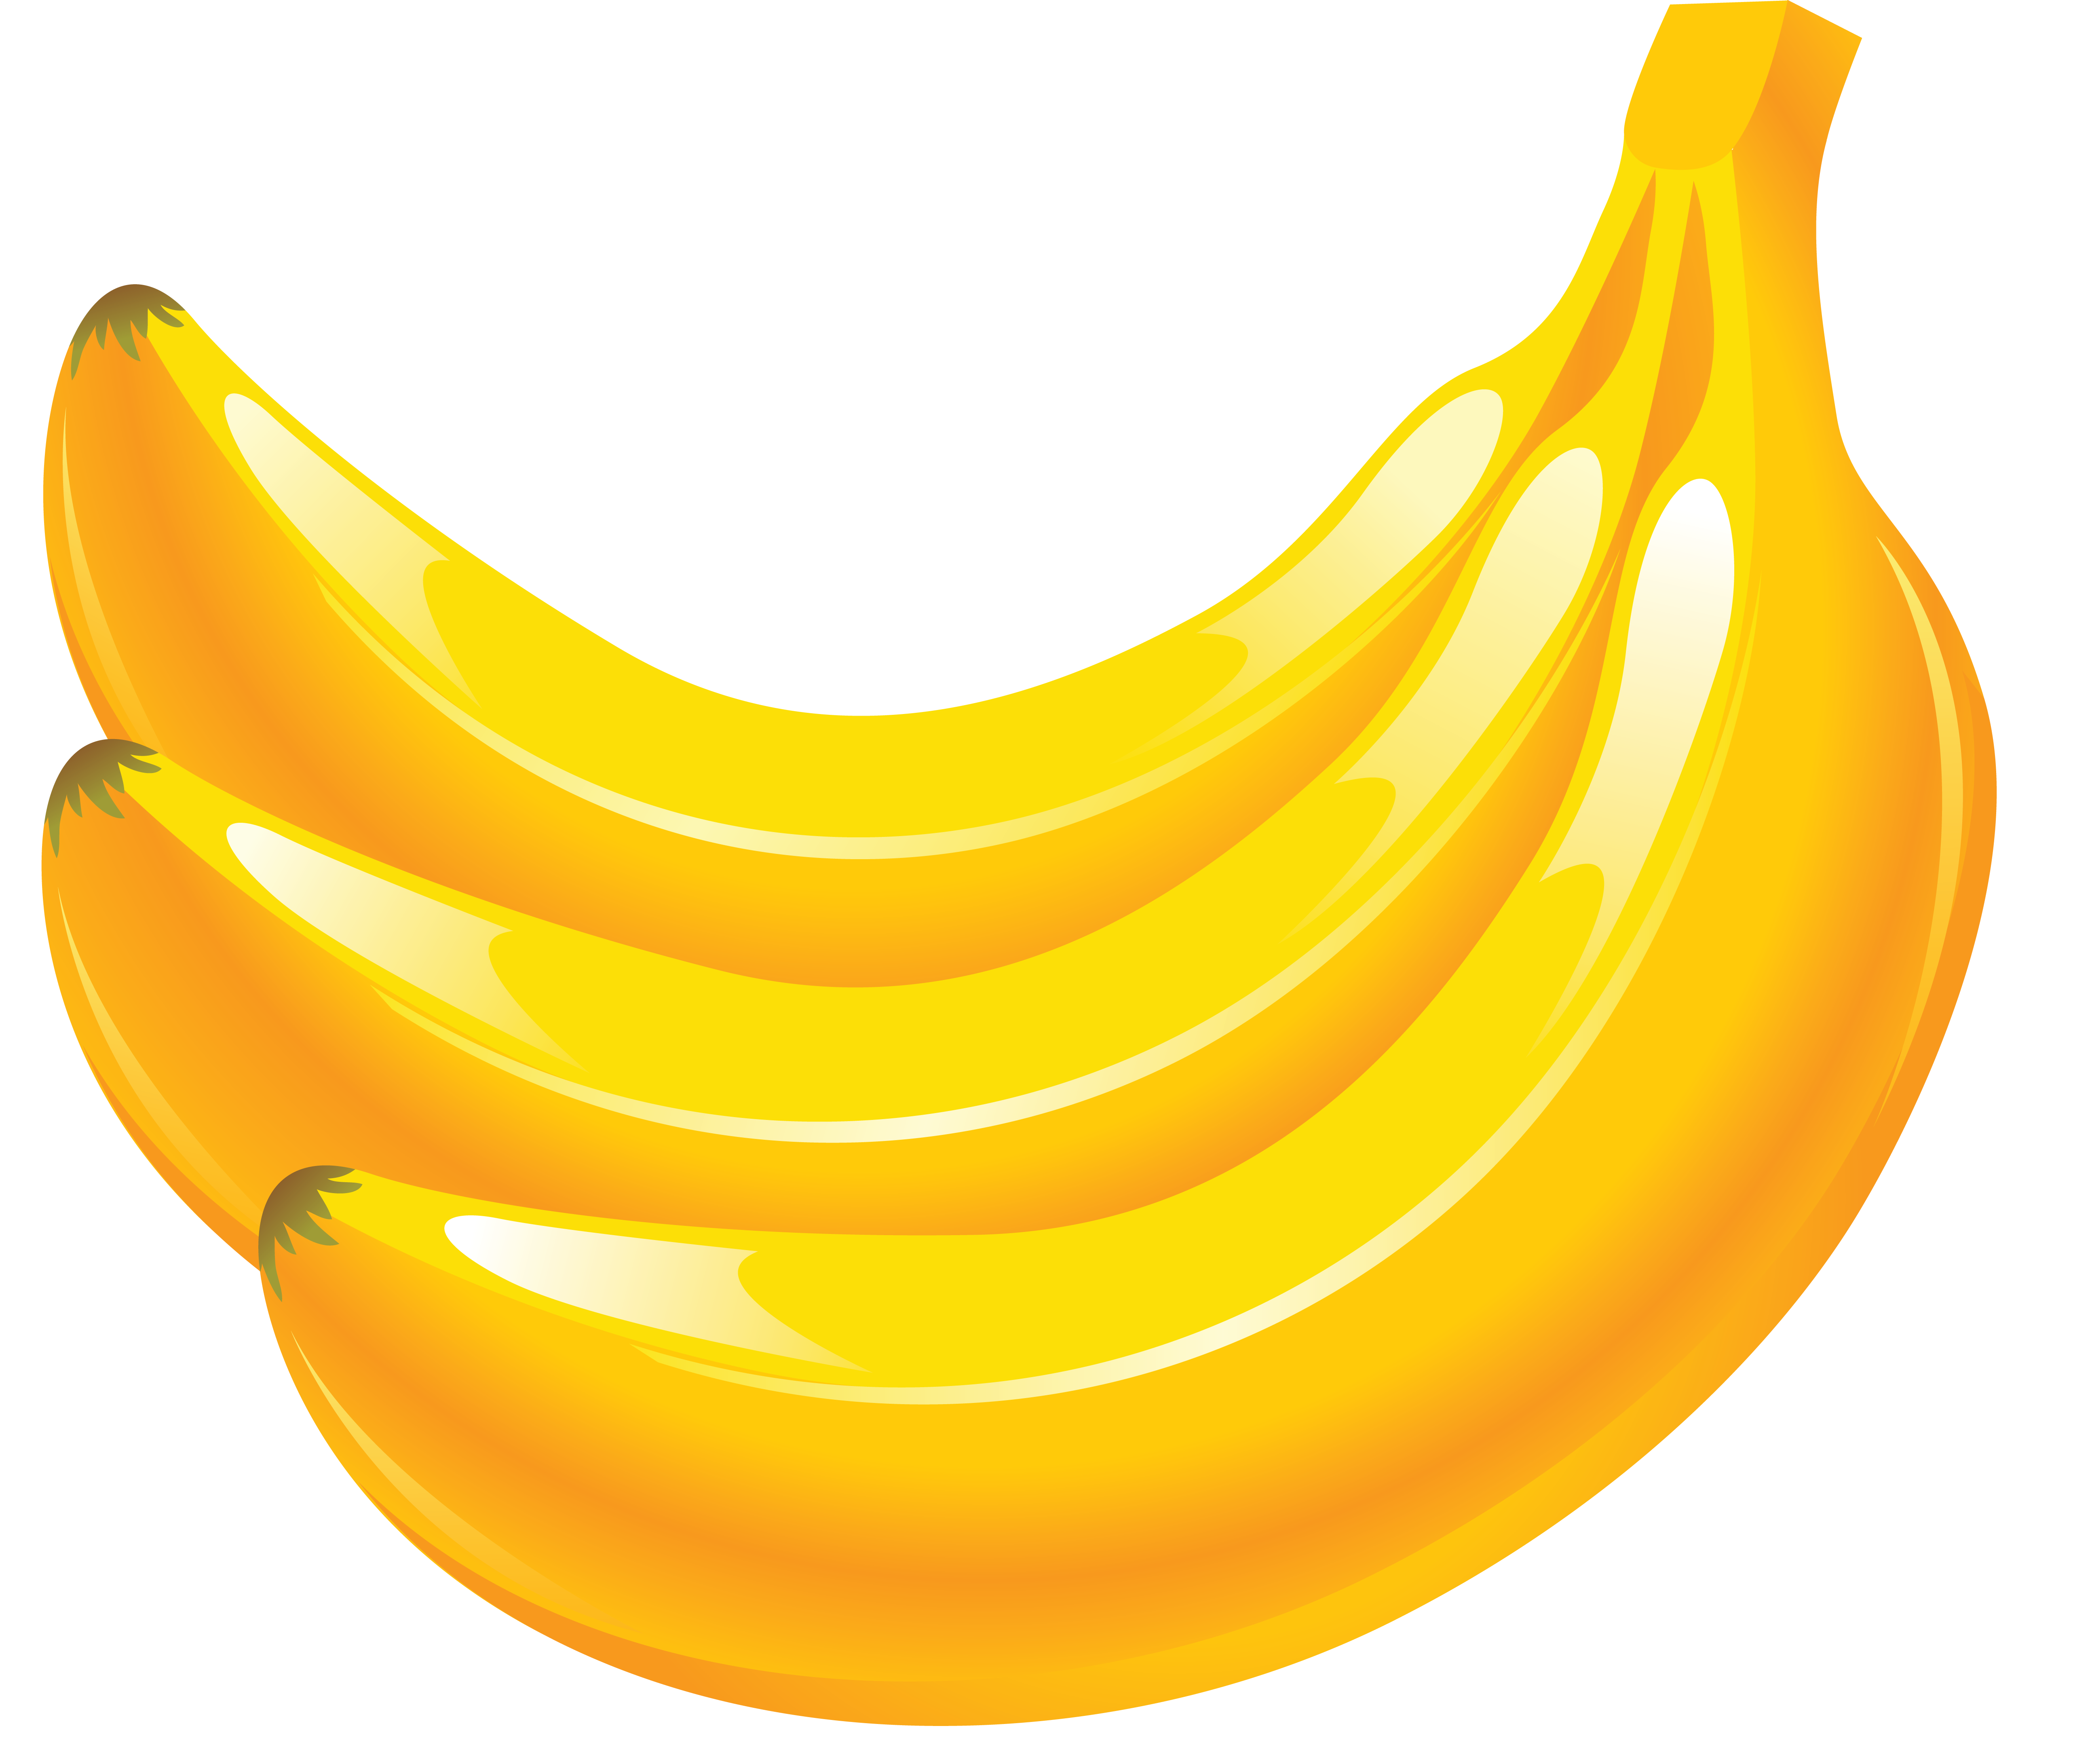 3 pisang kuning